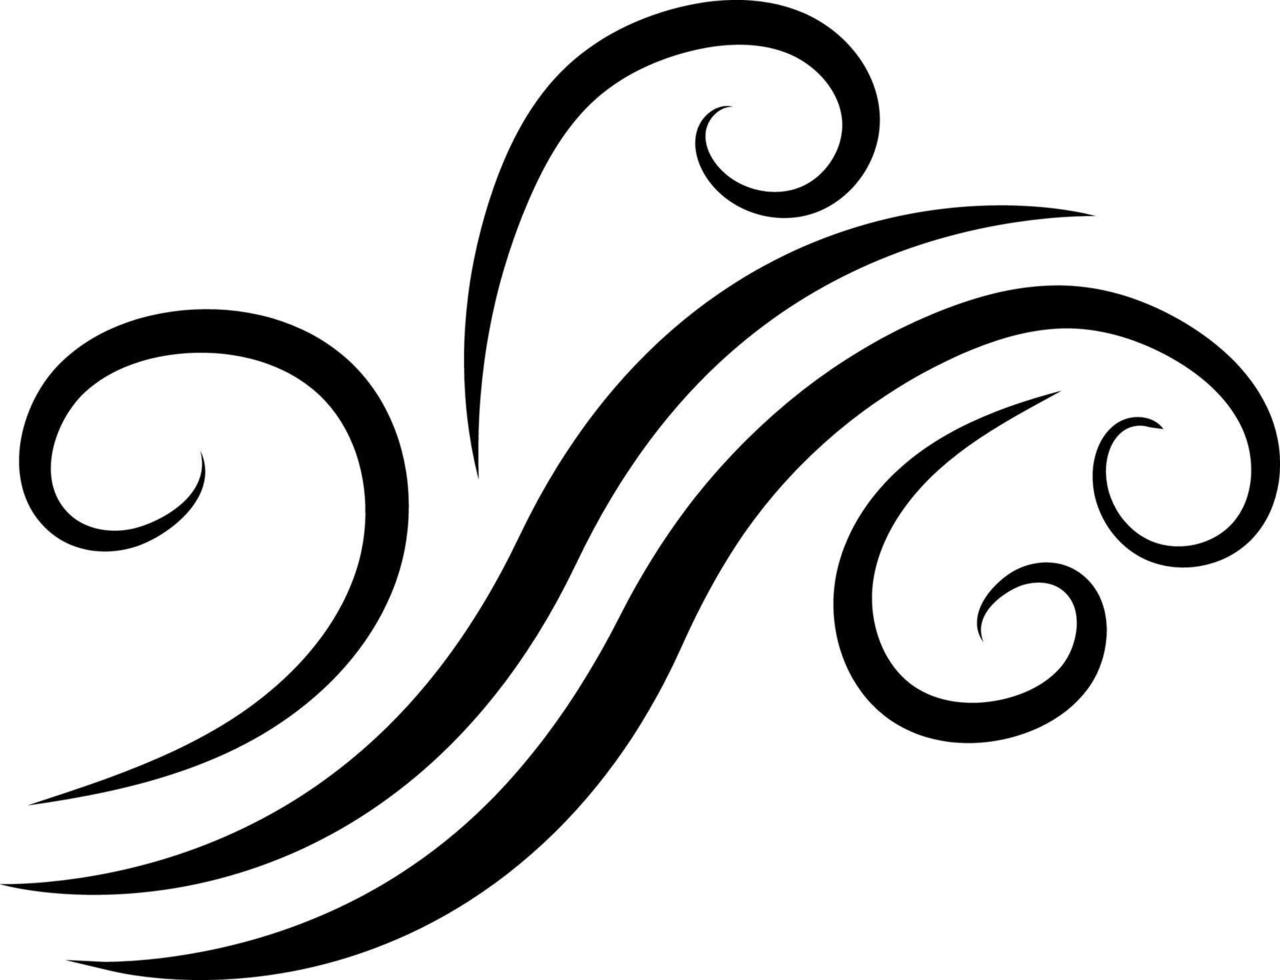 Icon sign sea wave, water spray vector